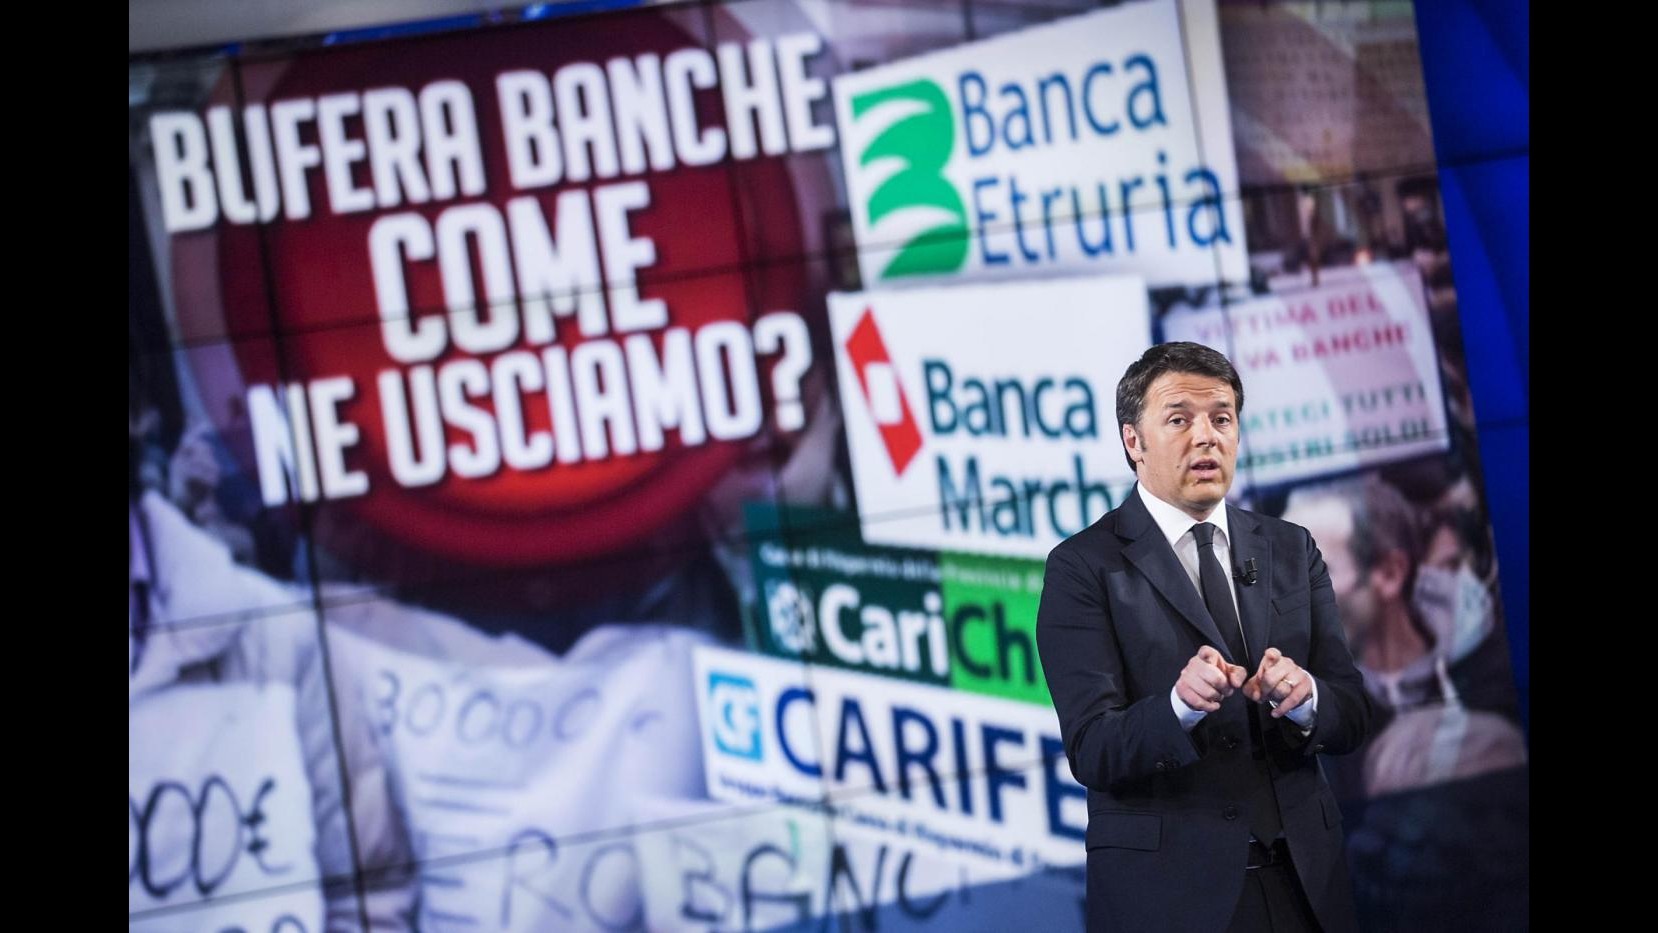 Banche, Renzi: Chi ha truffato dovrà pagare, le vittime saranno risarcite